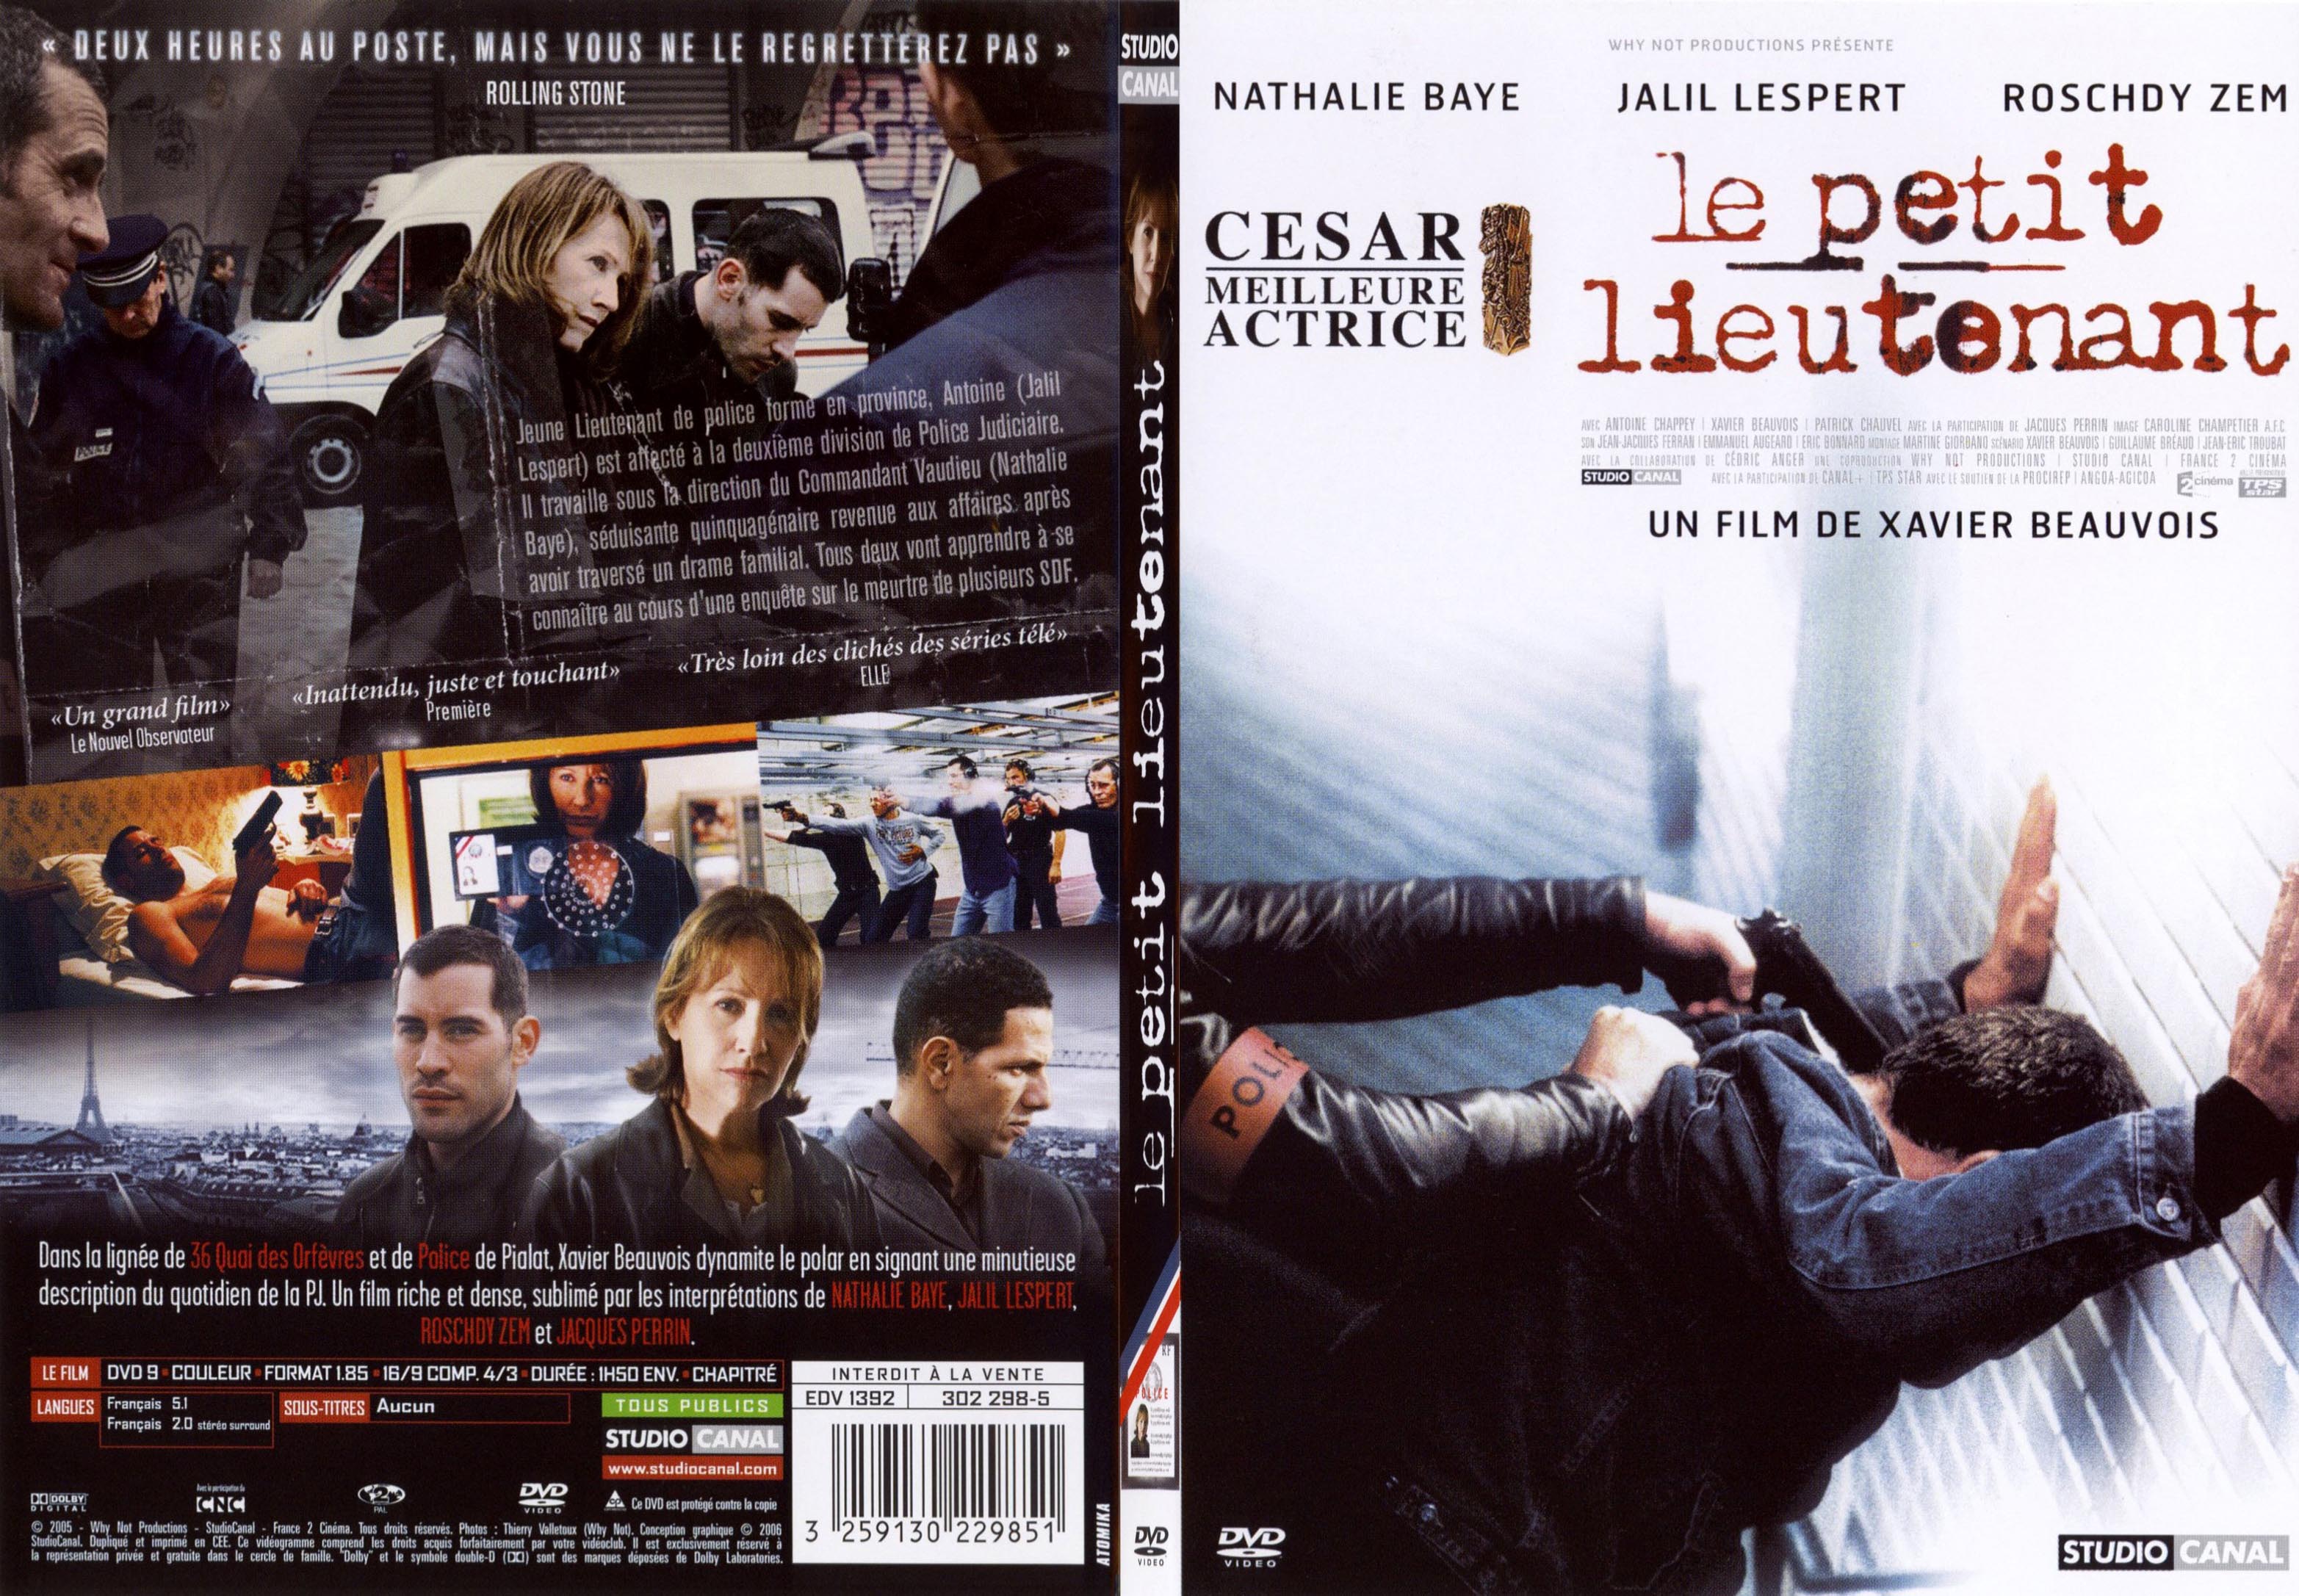 Jaquette DVD Le petit Lieutenant - SLIM